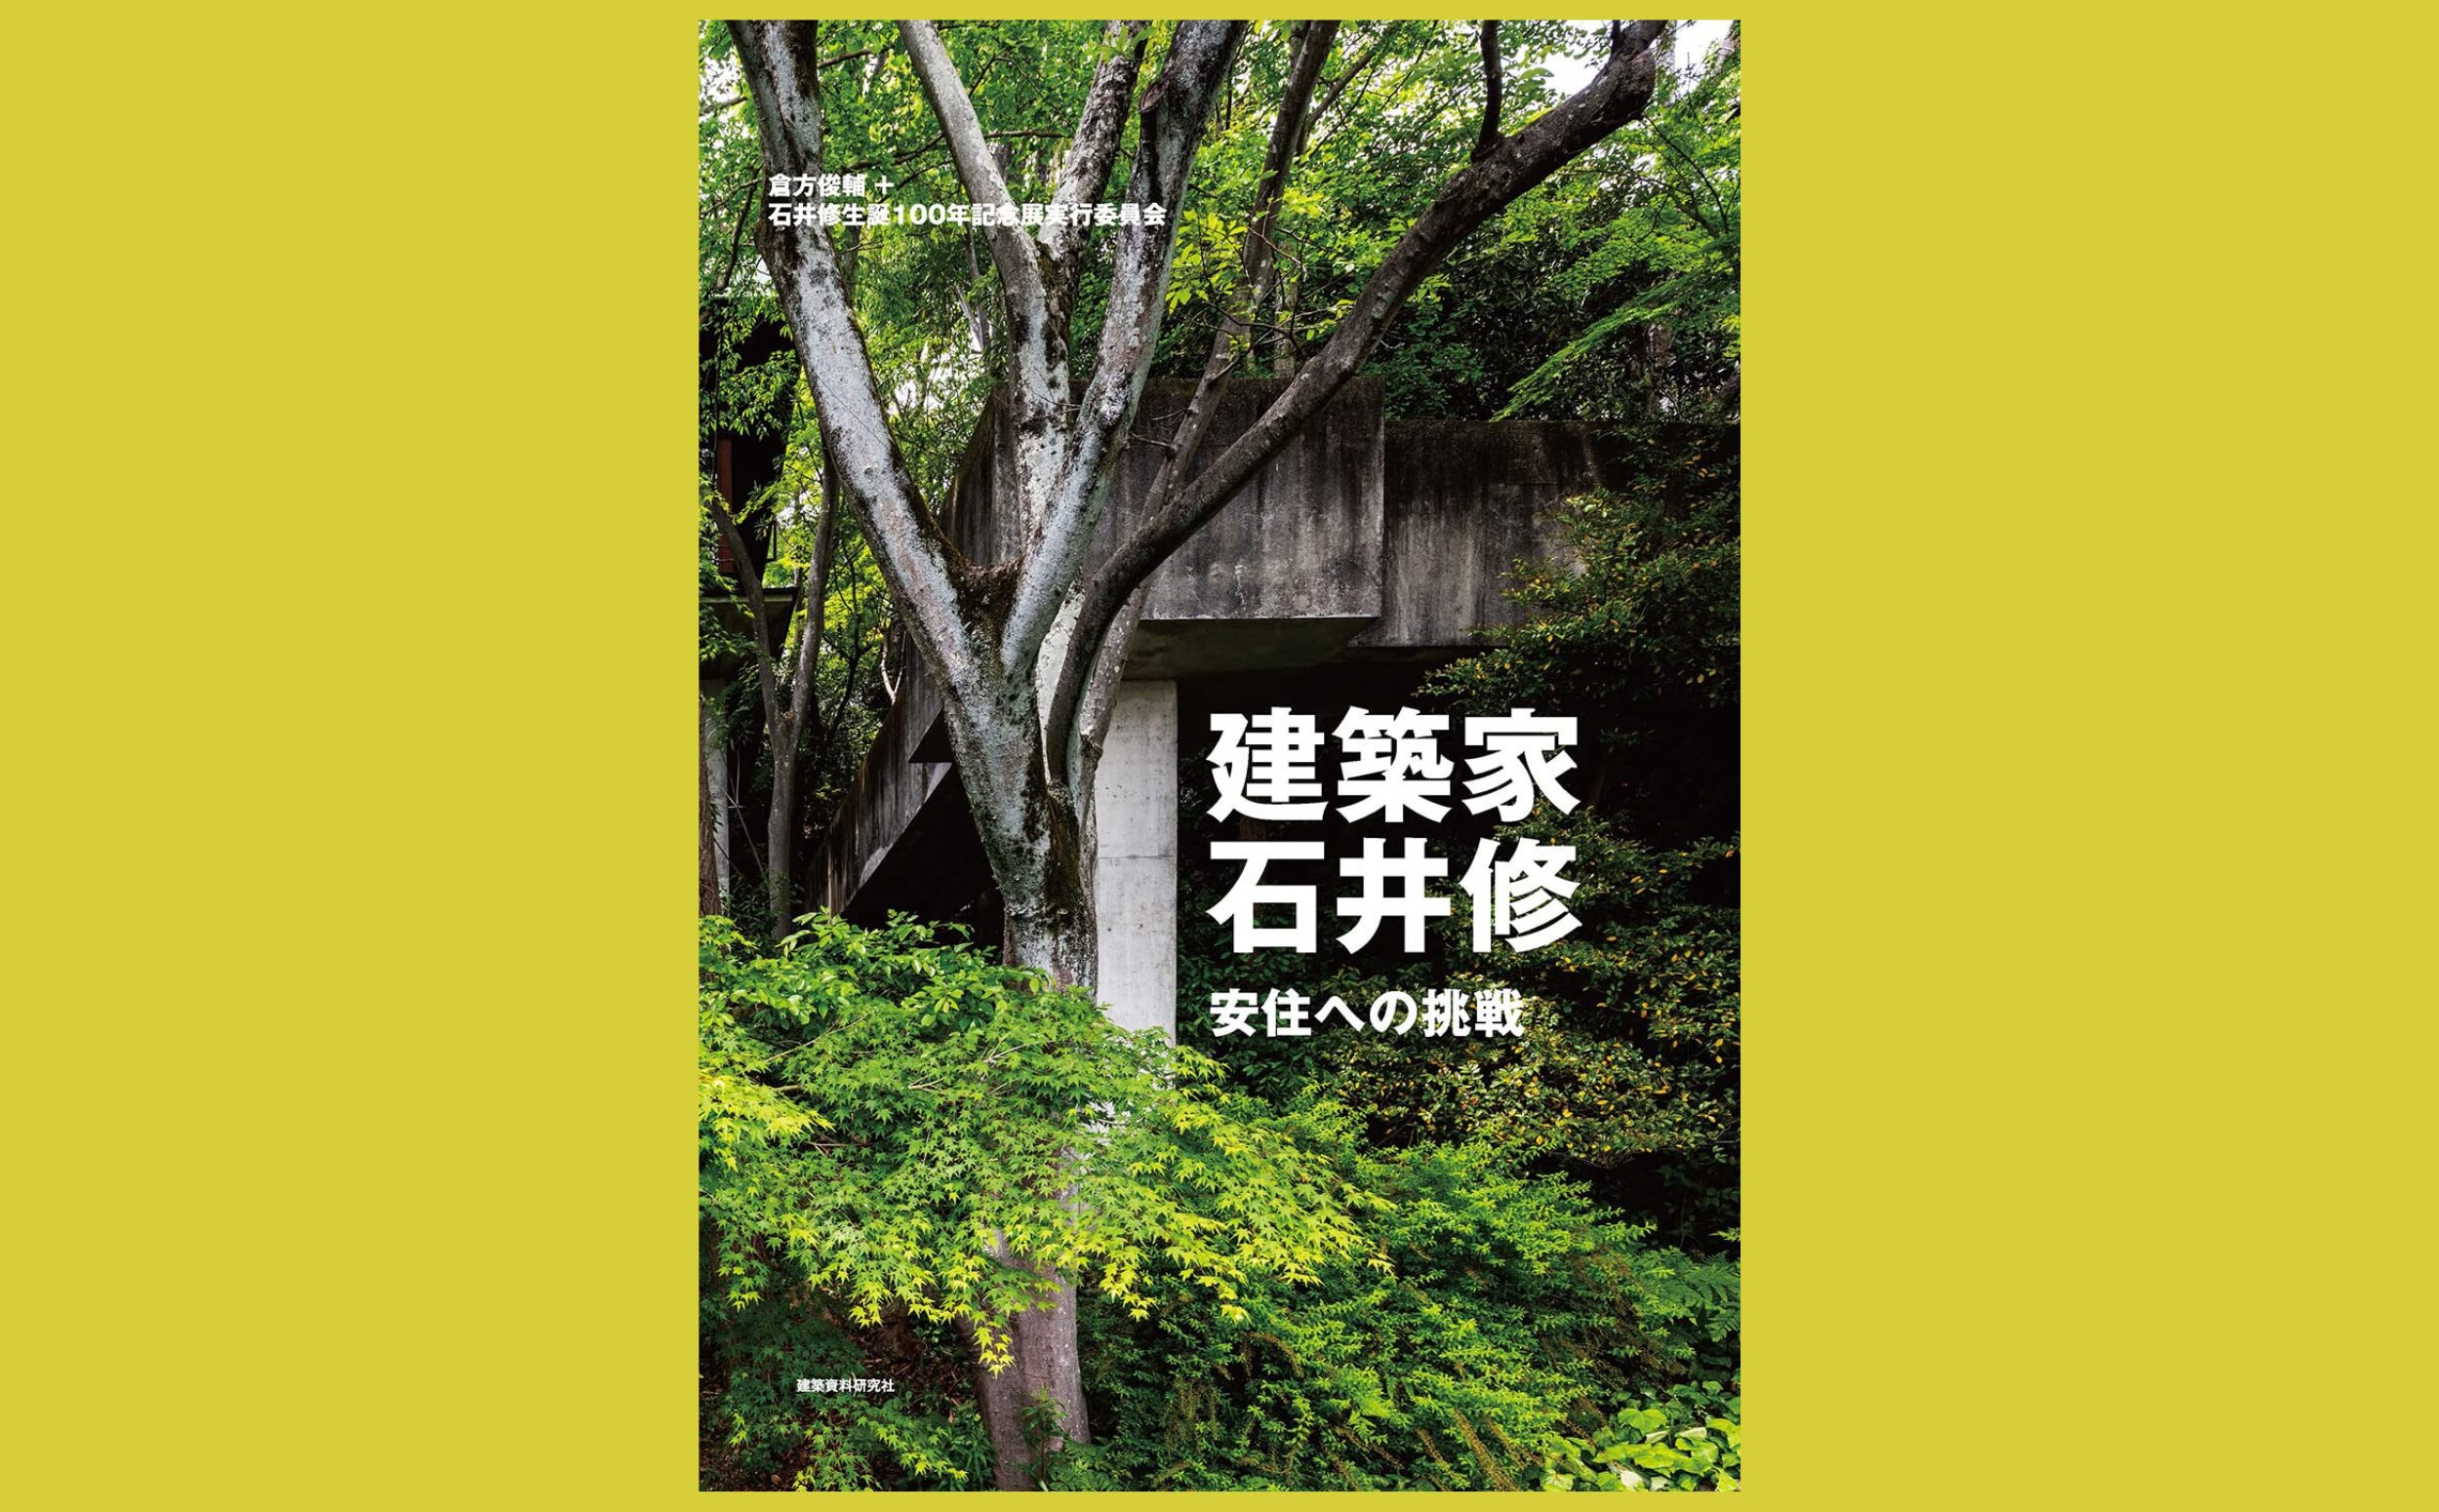 「緑の建築家」 “石井修”と、今、出会う『建築家・石井修 安住への挑戦』